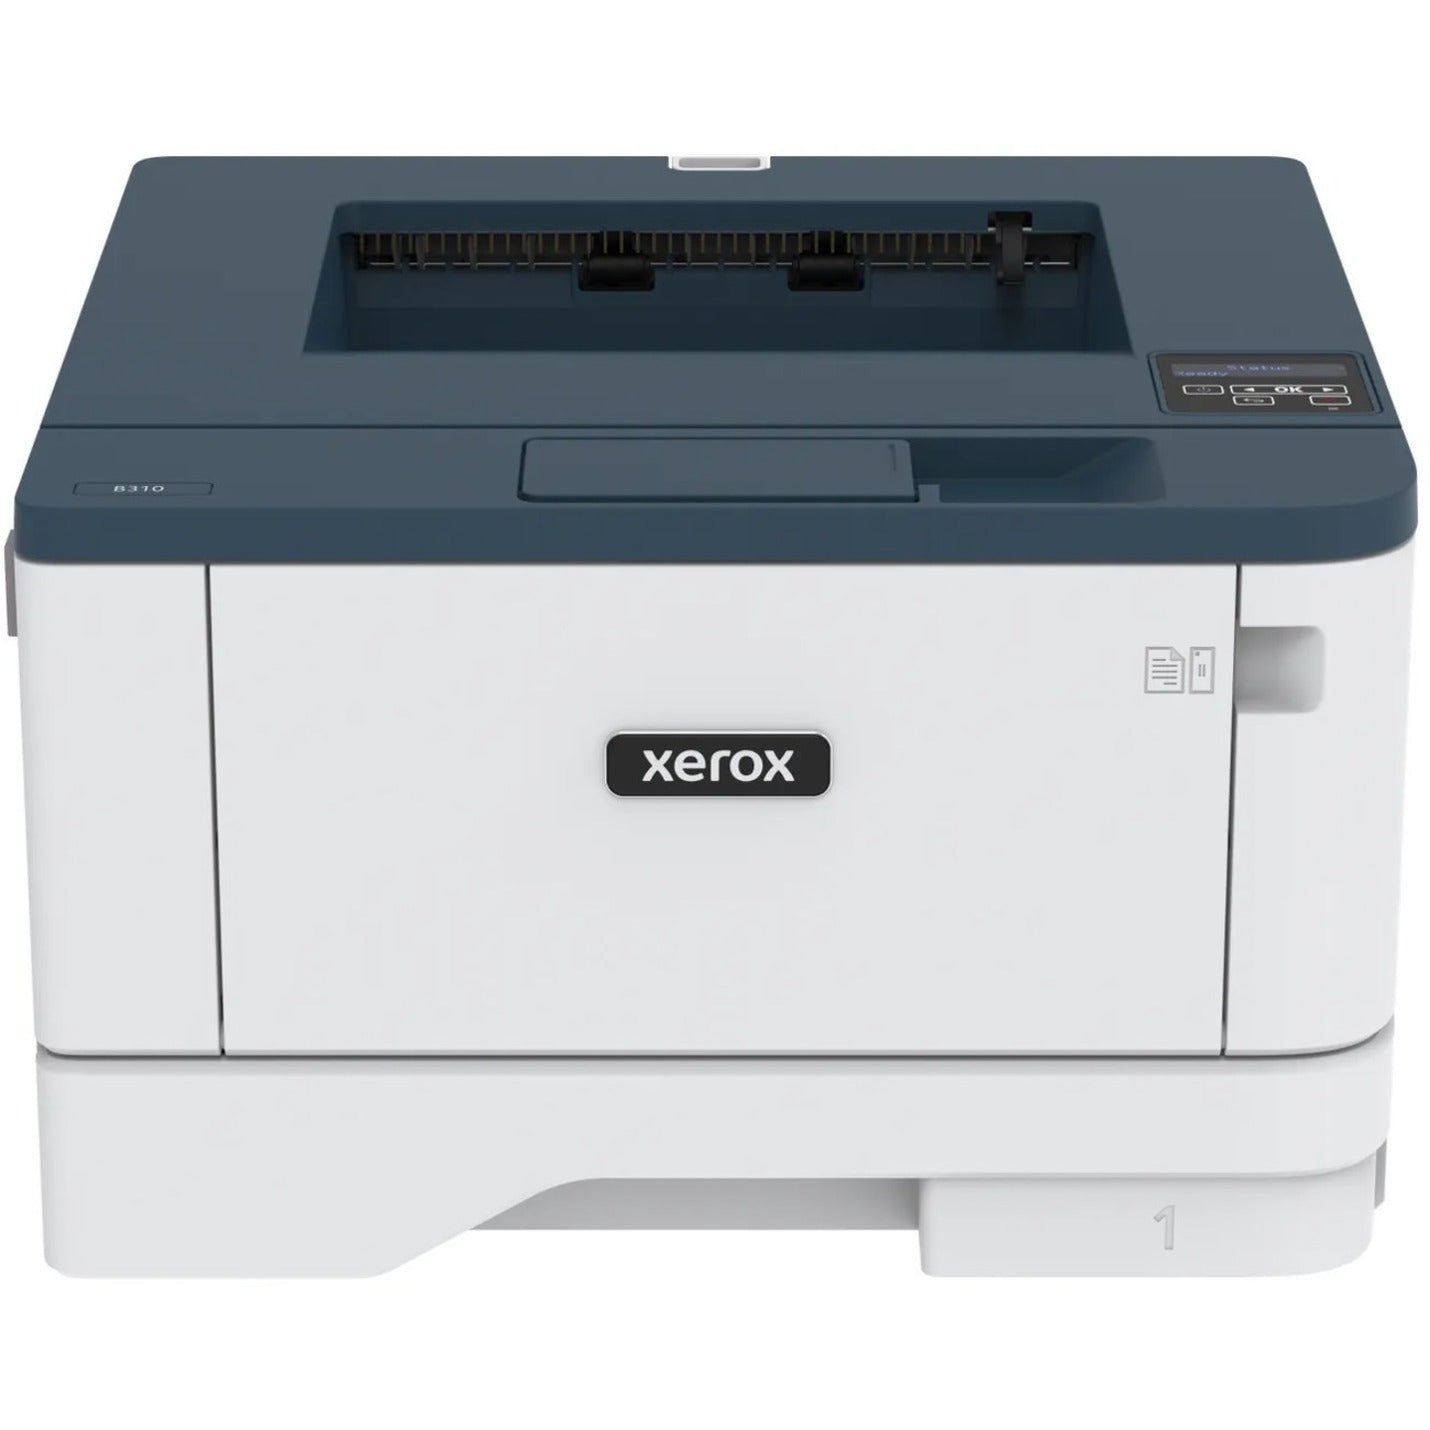 施乐 B310/DNI 台式无线激光打印机 - 单色，42页/分钟，自动双面打印，无线连接 施乐 - Xerox